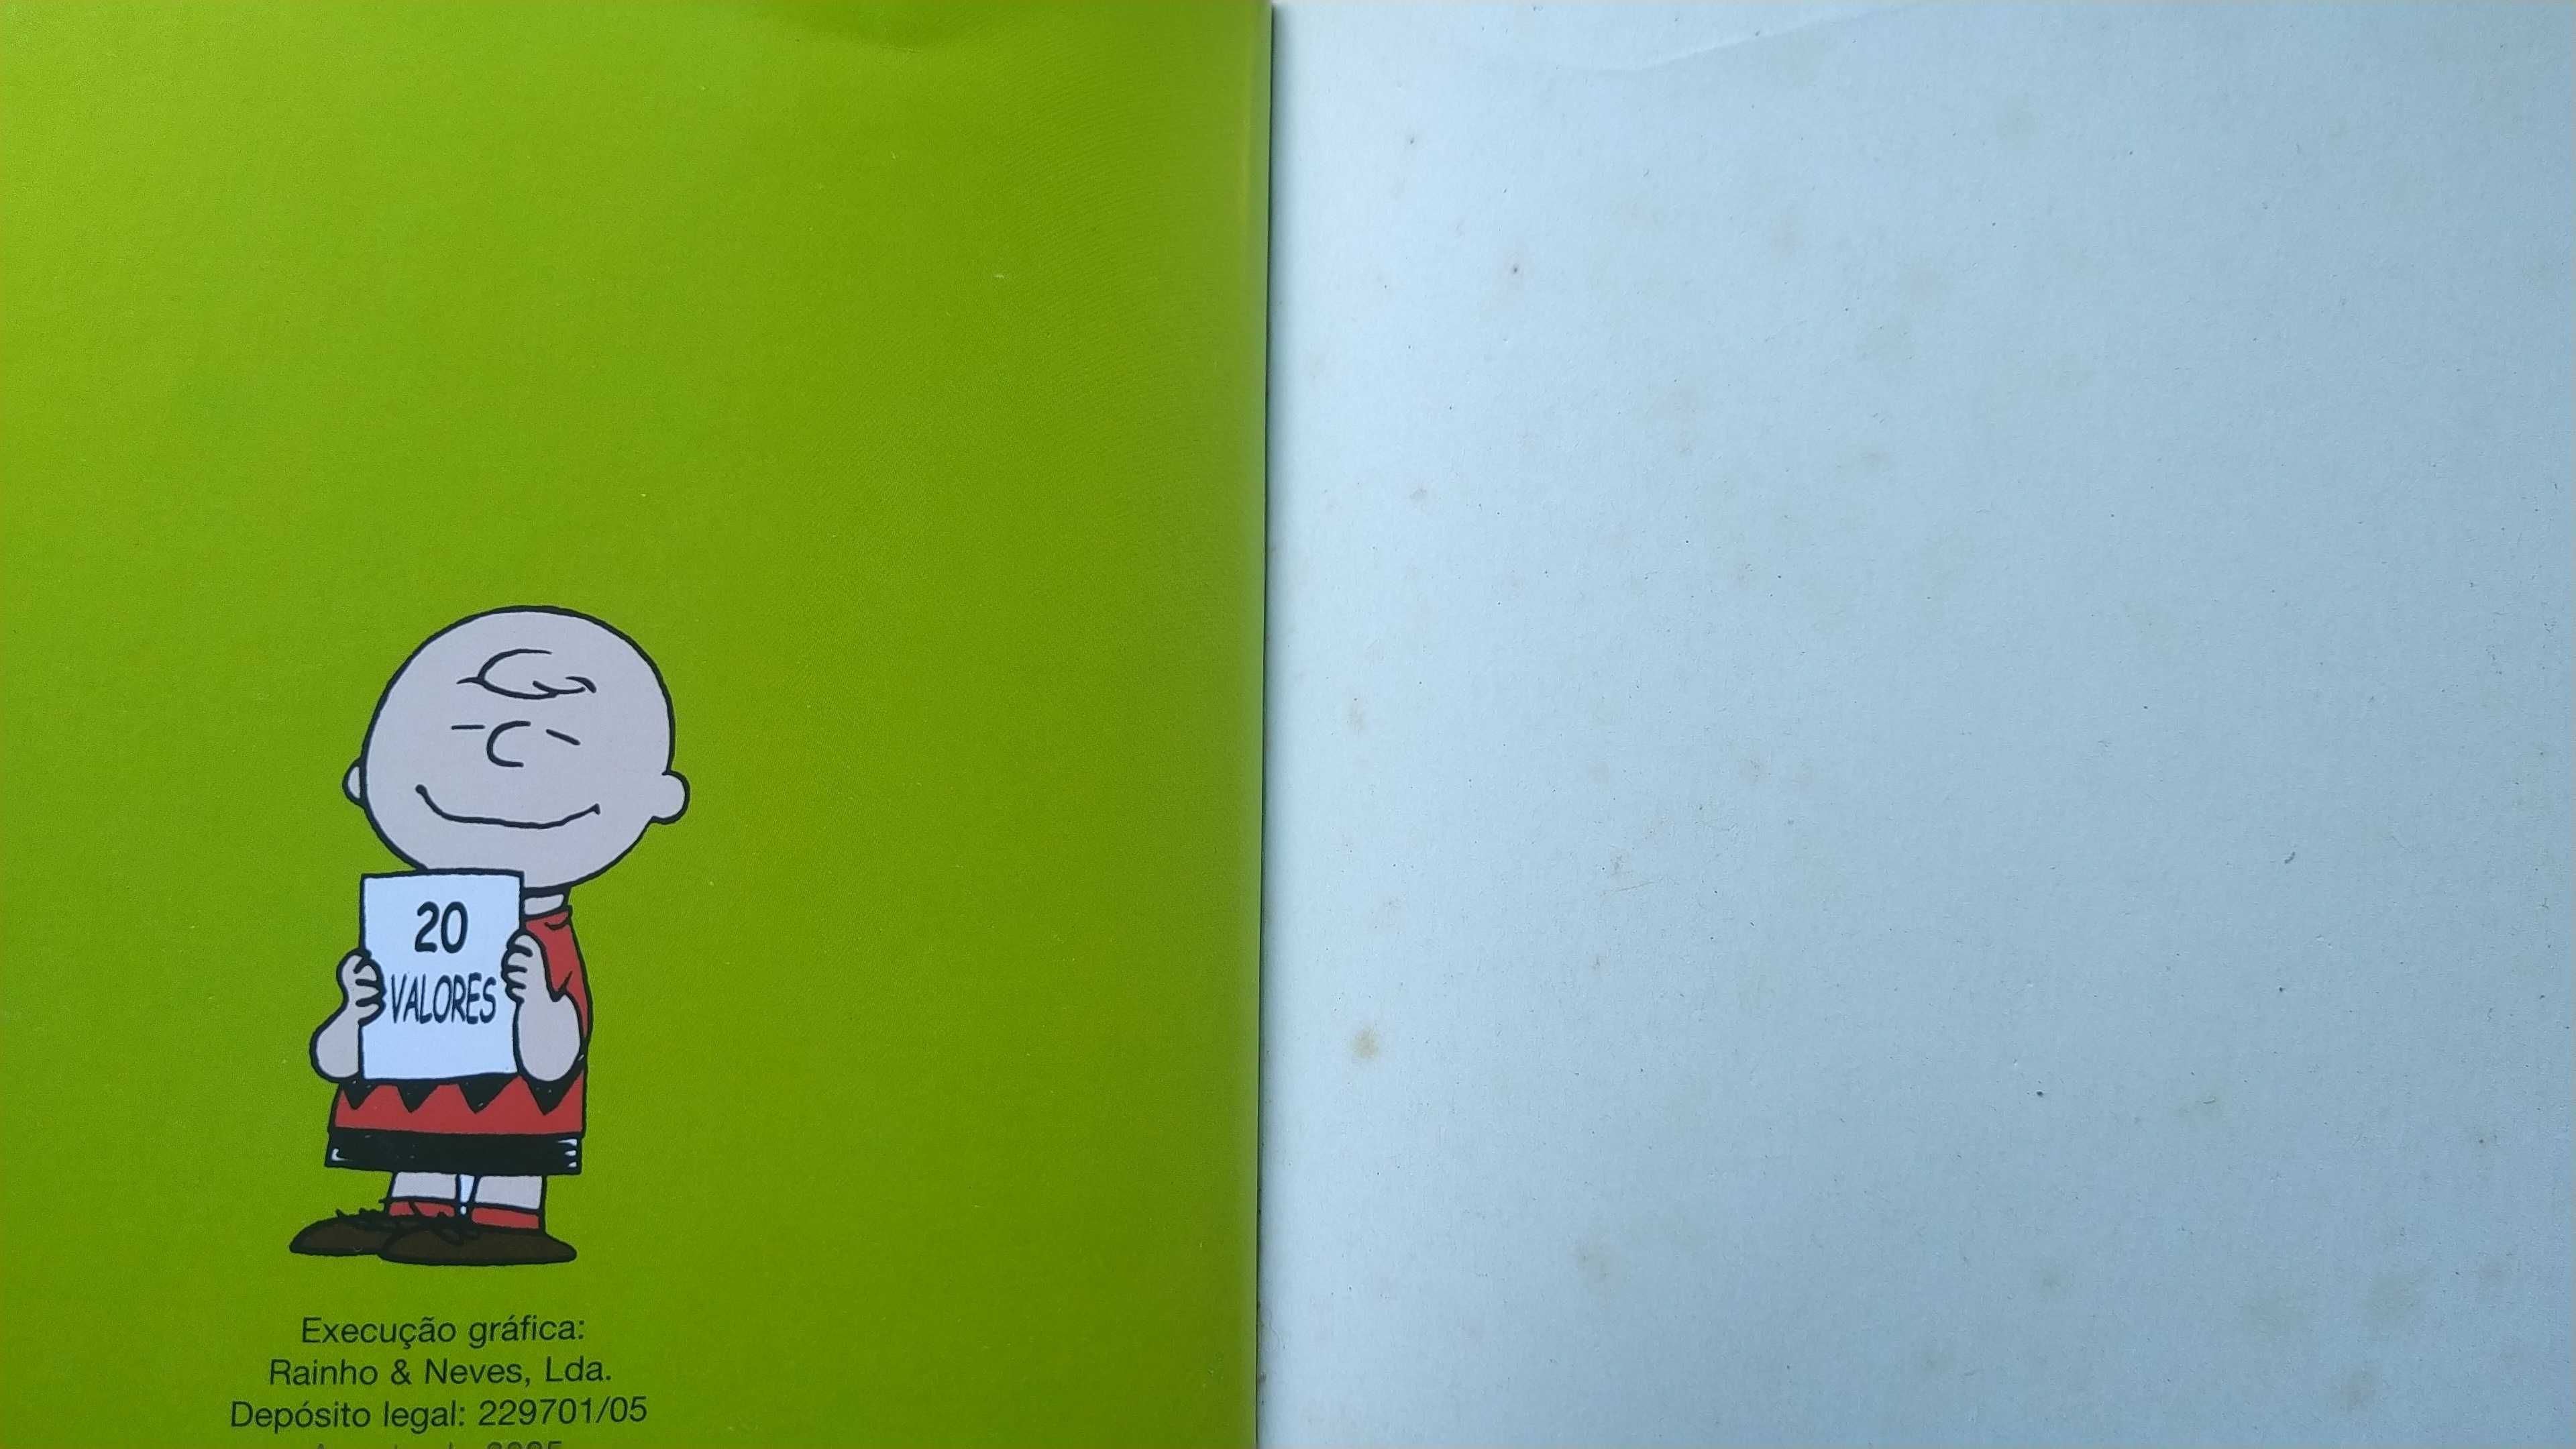 Livro Snoopy "Felicidade"